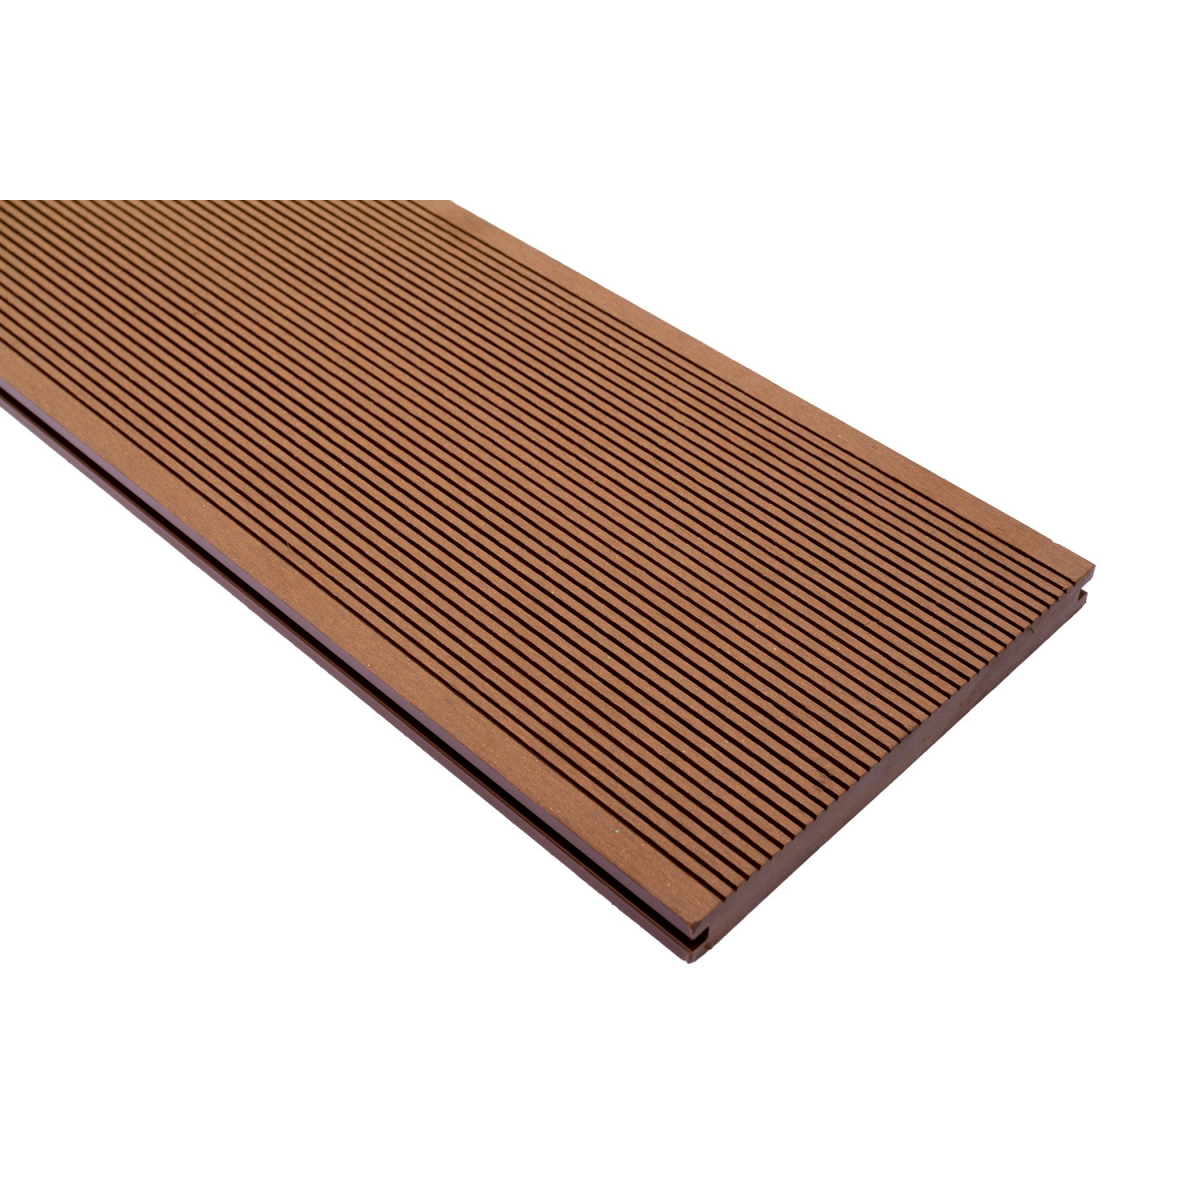 Vareprøve Terrassebord WPC komposittgulv massiv brun 20cm bredde